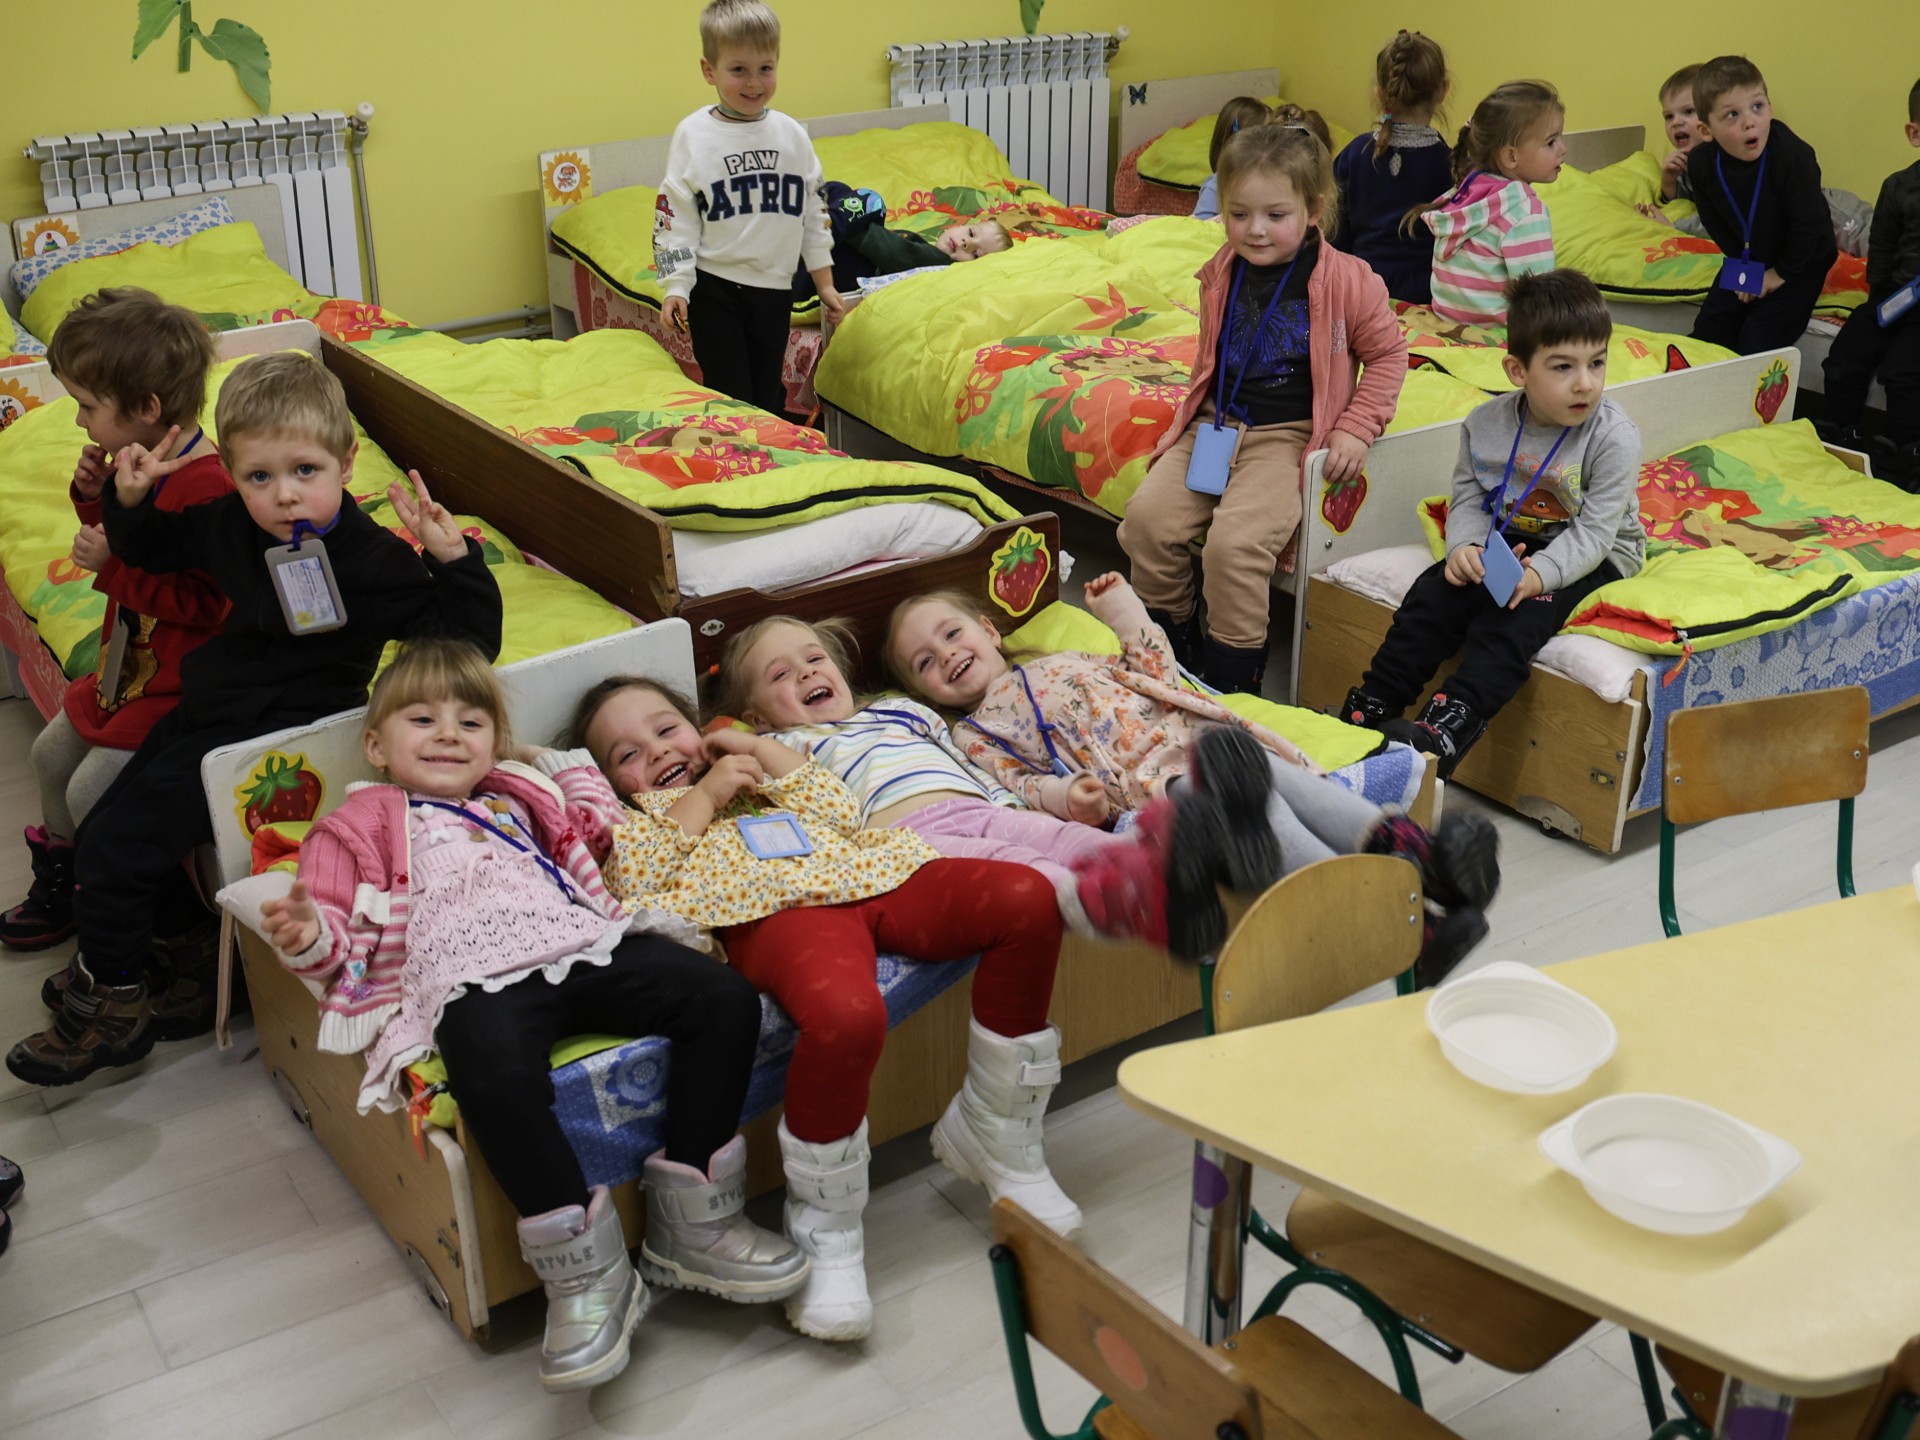 EIne Gruppe von Kindern in einem Ruheraum mit Betten.